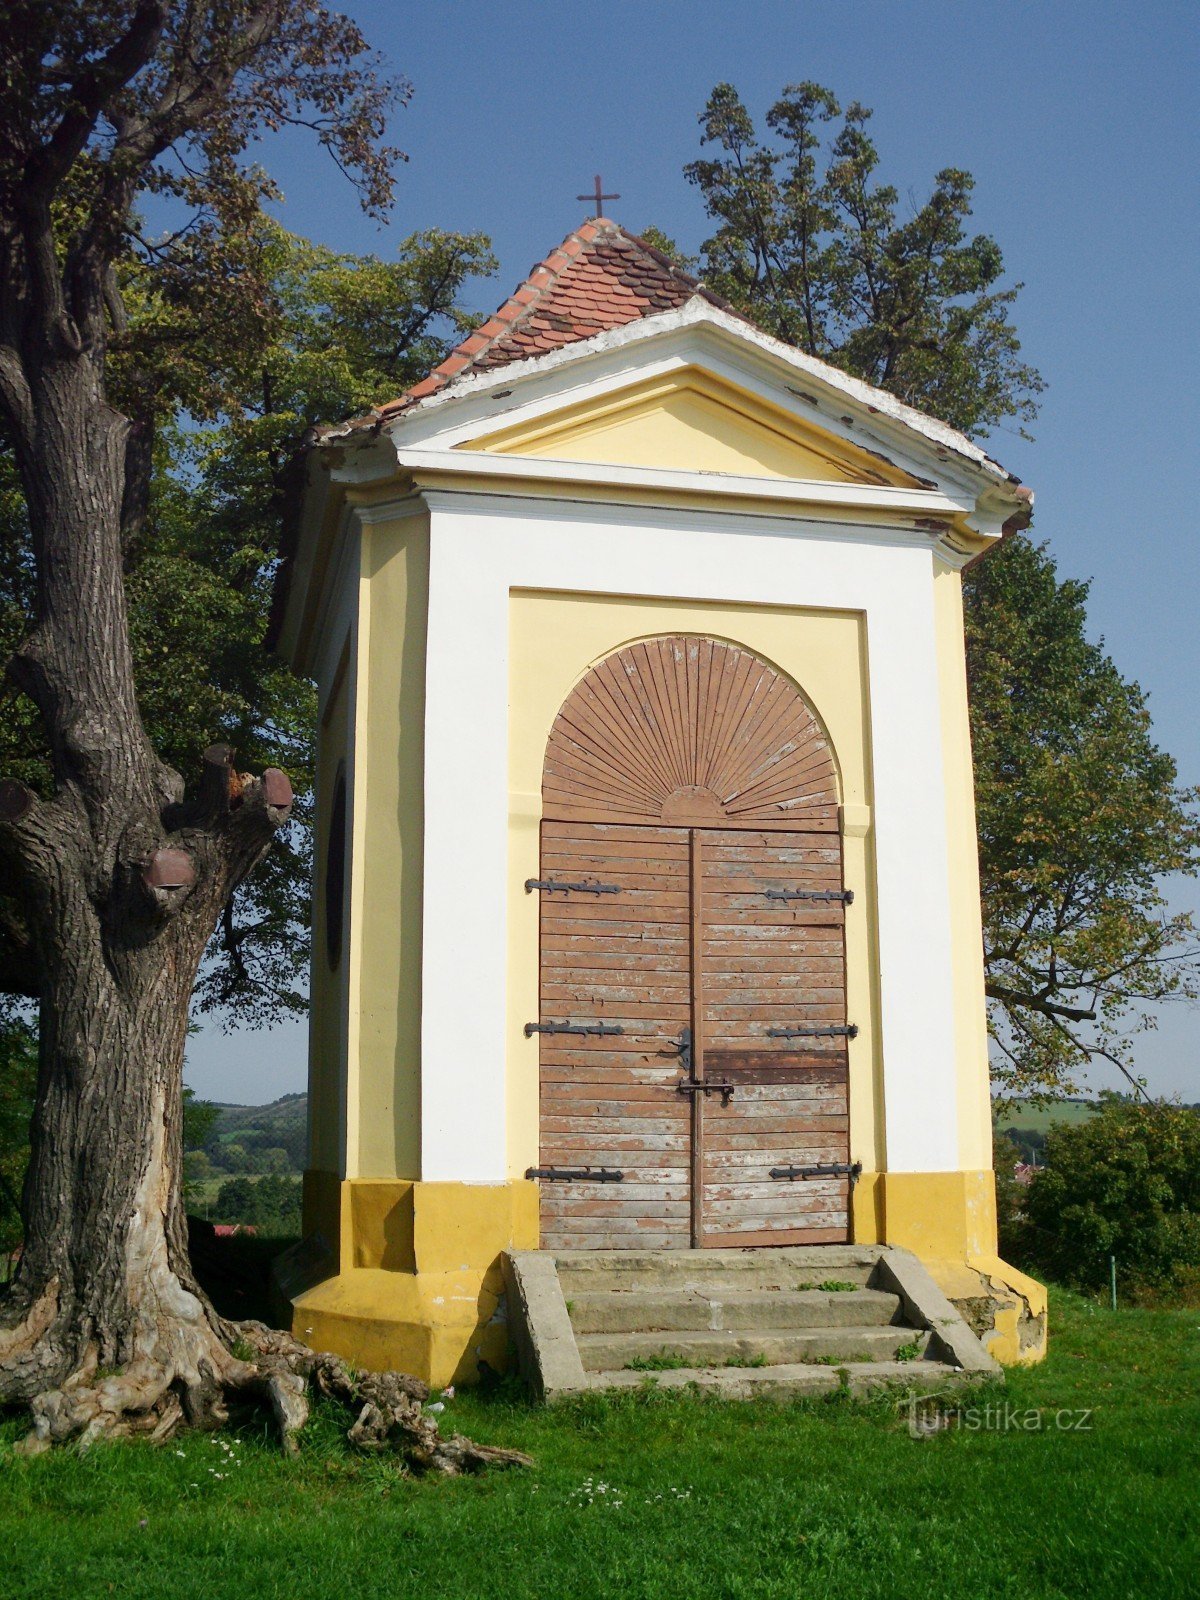 Koryčany - Chapel of St. Floriana